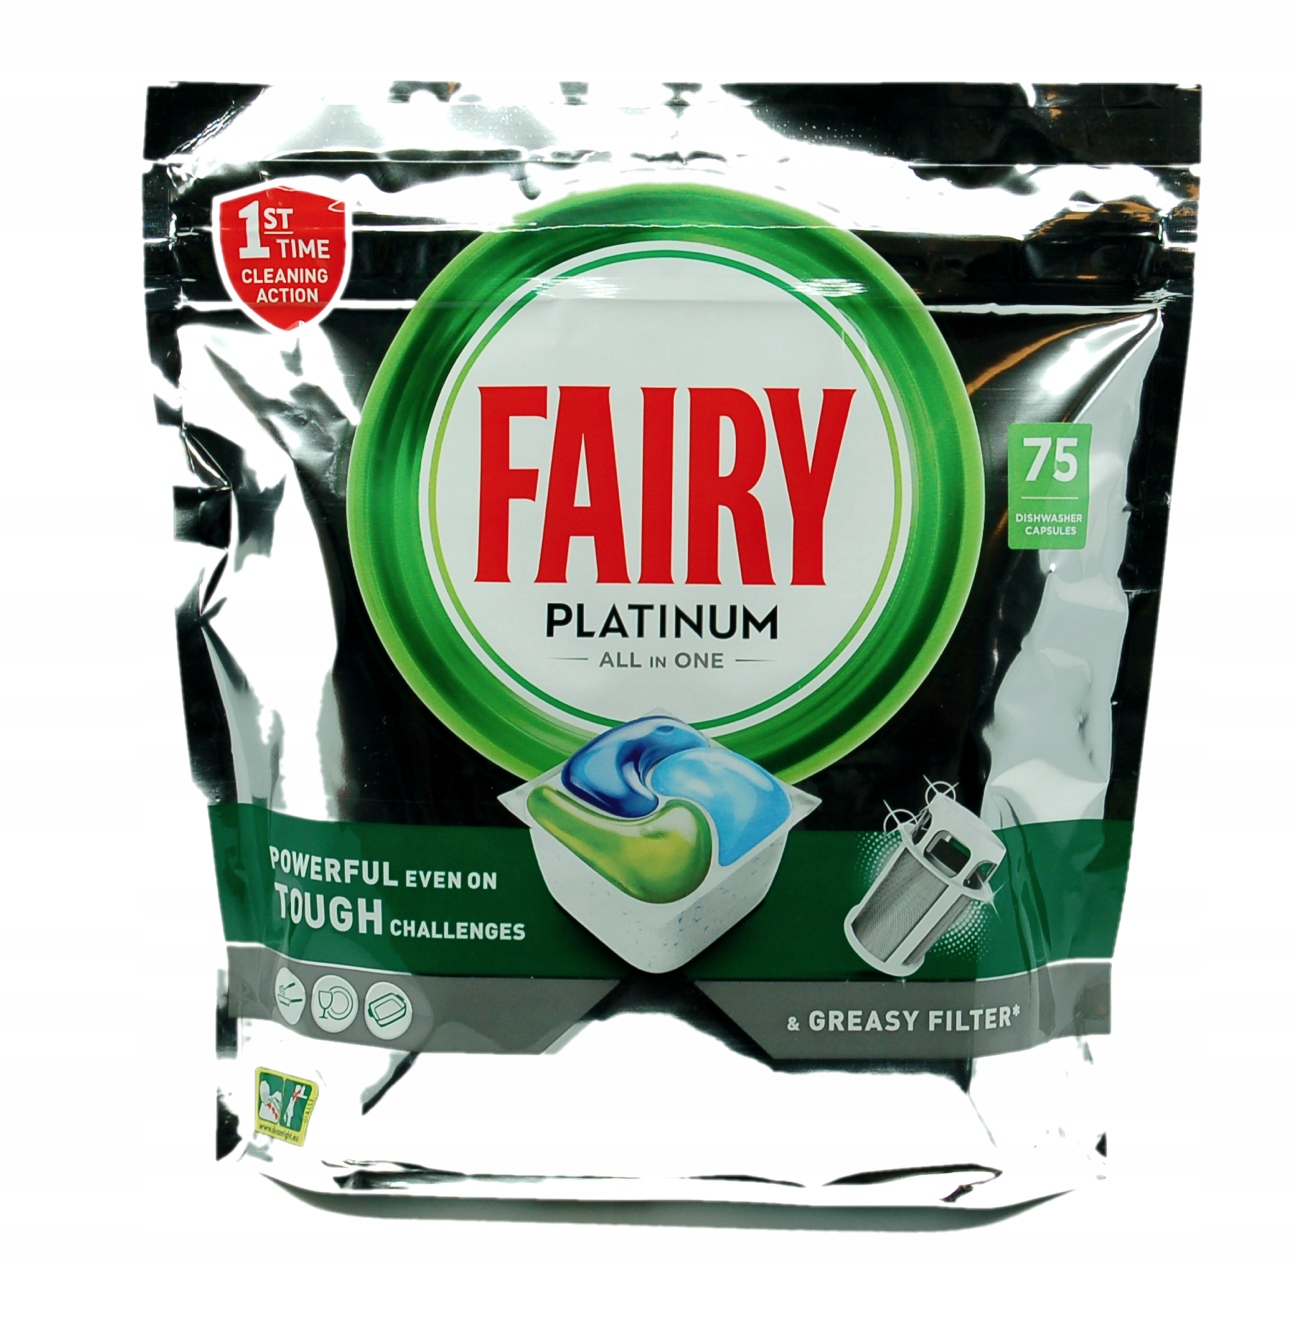 

Kapsułki do zmywarki Fairy Platinum 75 sztuk